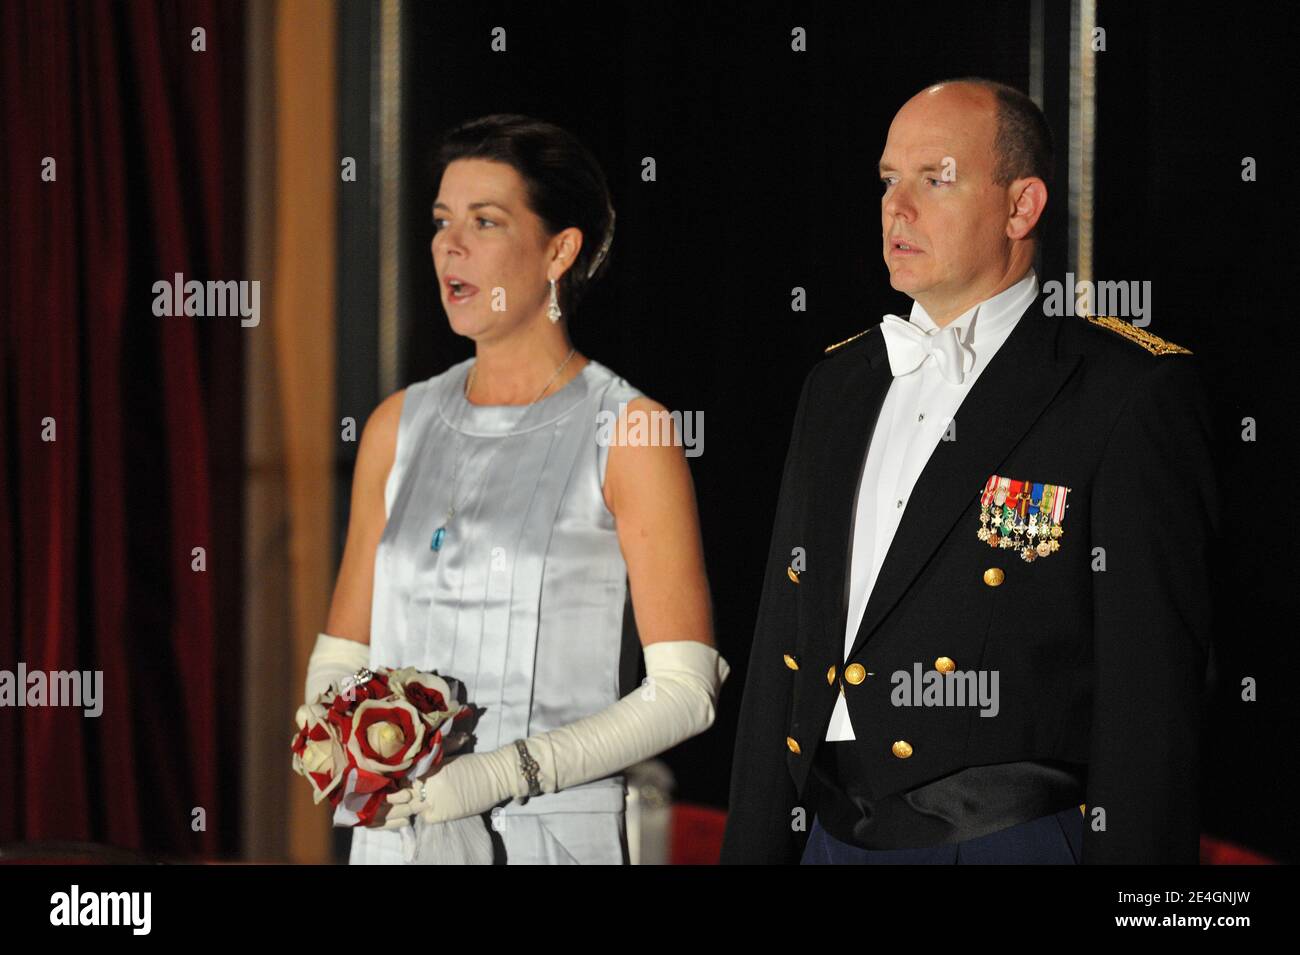 Le Prince Albert II de Monaco et la Princesse Caroline de Hanovre arrivent à Monaco le 19 novembre 2009 pour le Gala de l'Opéra Turandot dans le cadre des célébrations de la Journée nationale de Monaco. Photo de Nebinger-Orban/ABACAPRESS.COM Banque D'Images